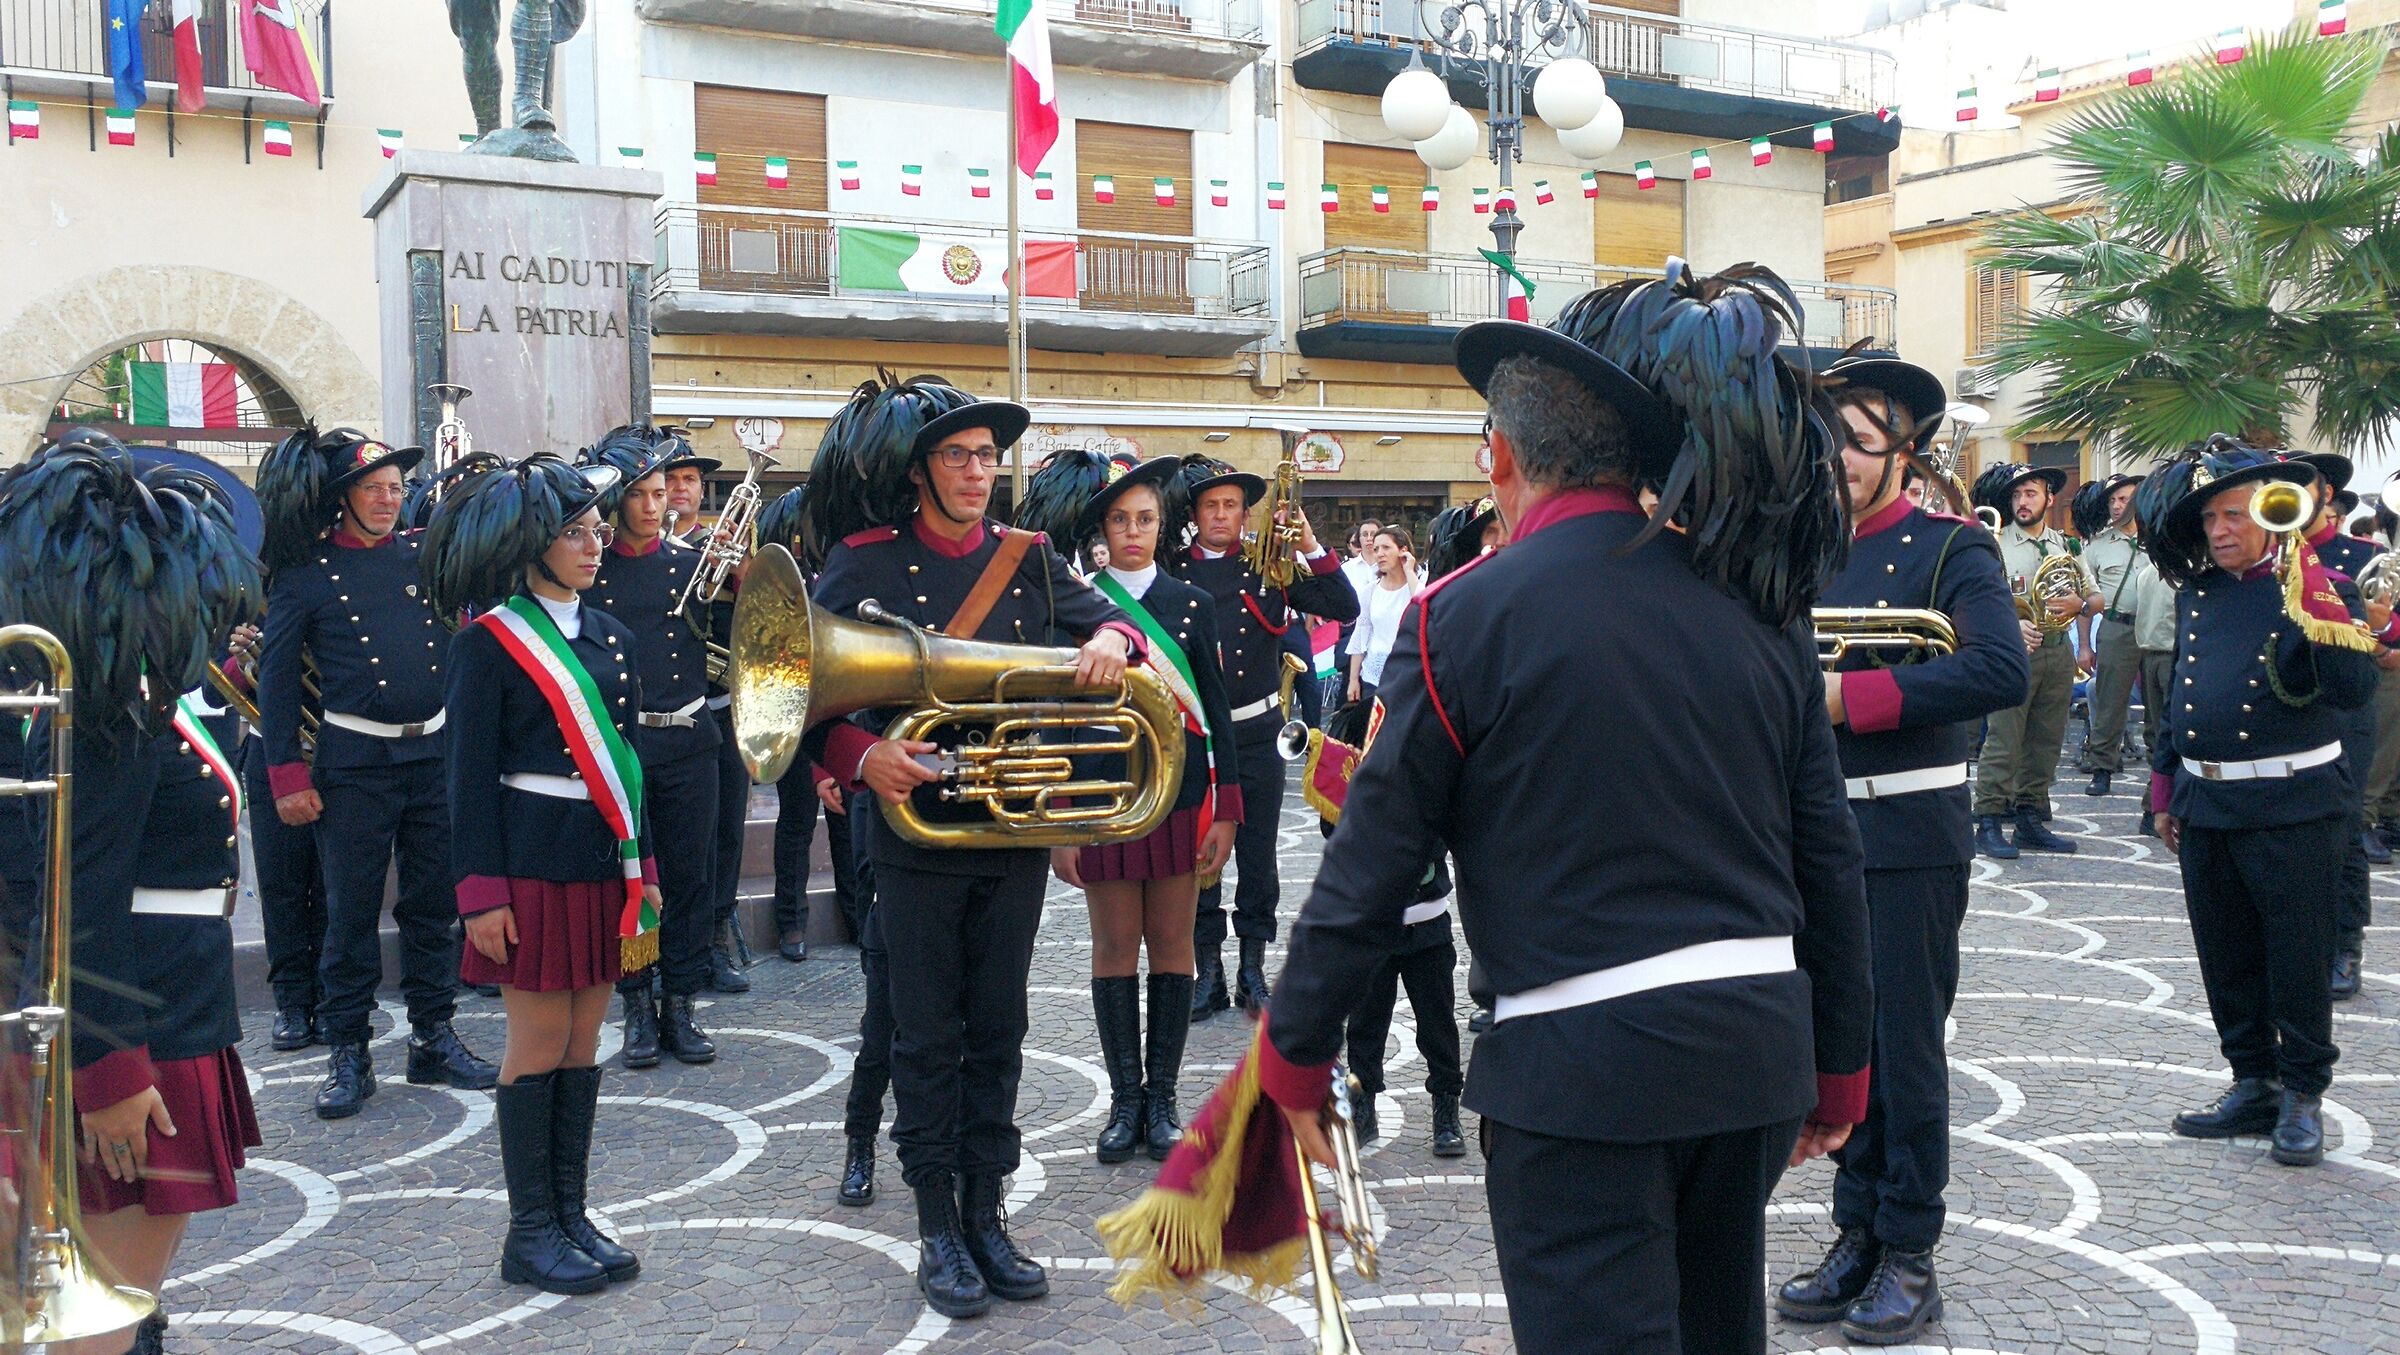 Casteldaccia (Pa) Tricolor Festival 28.09.2019...